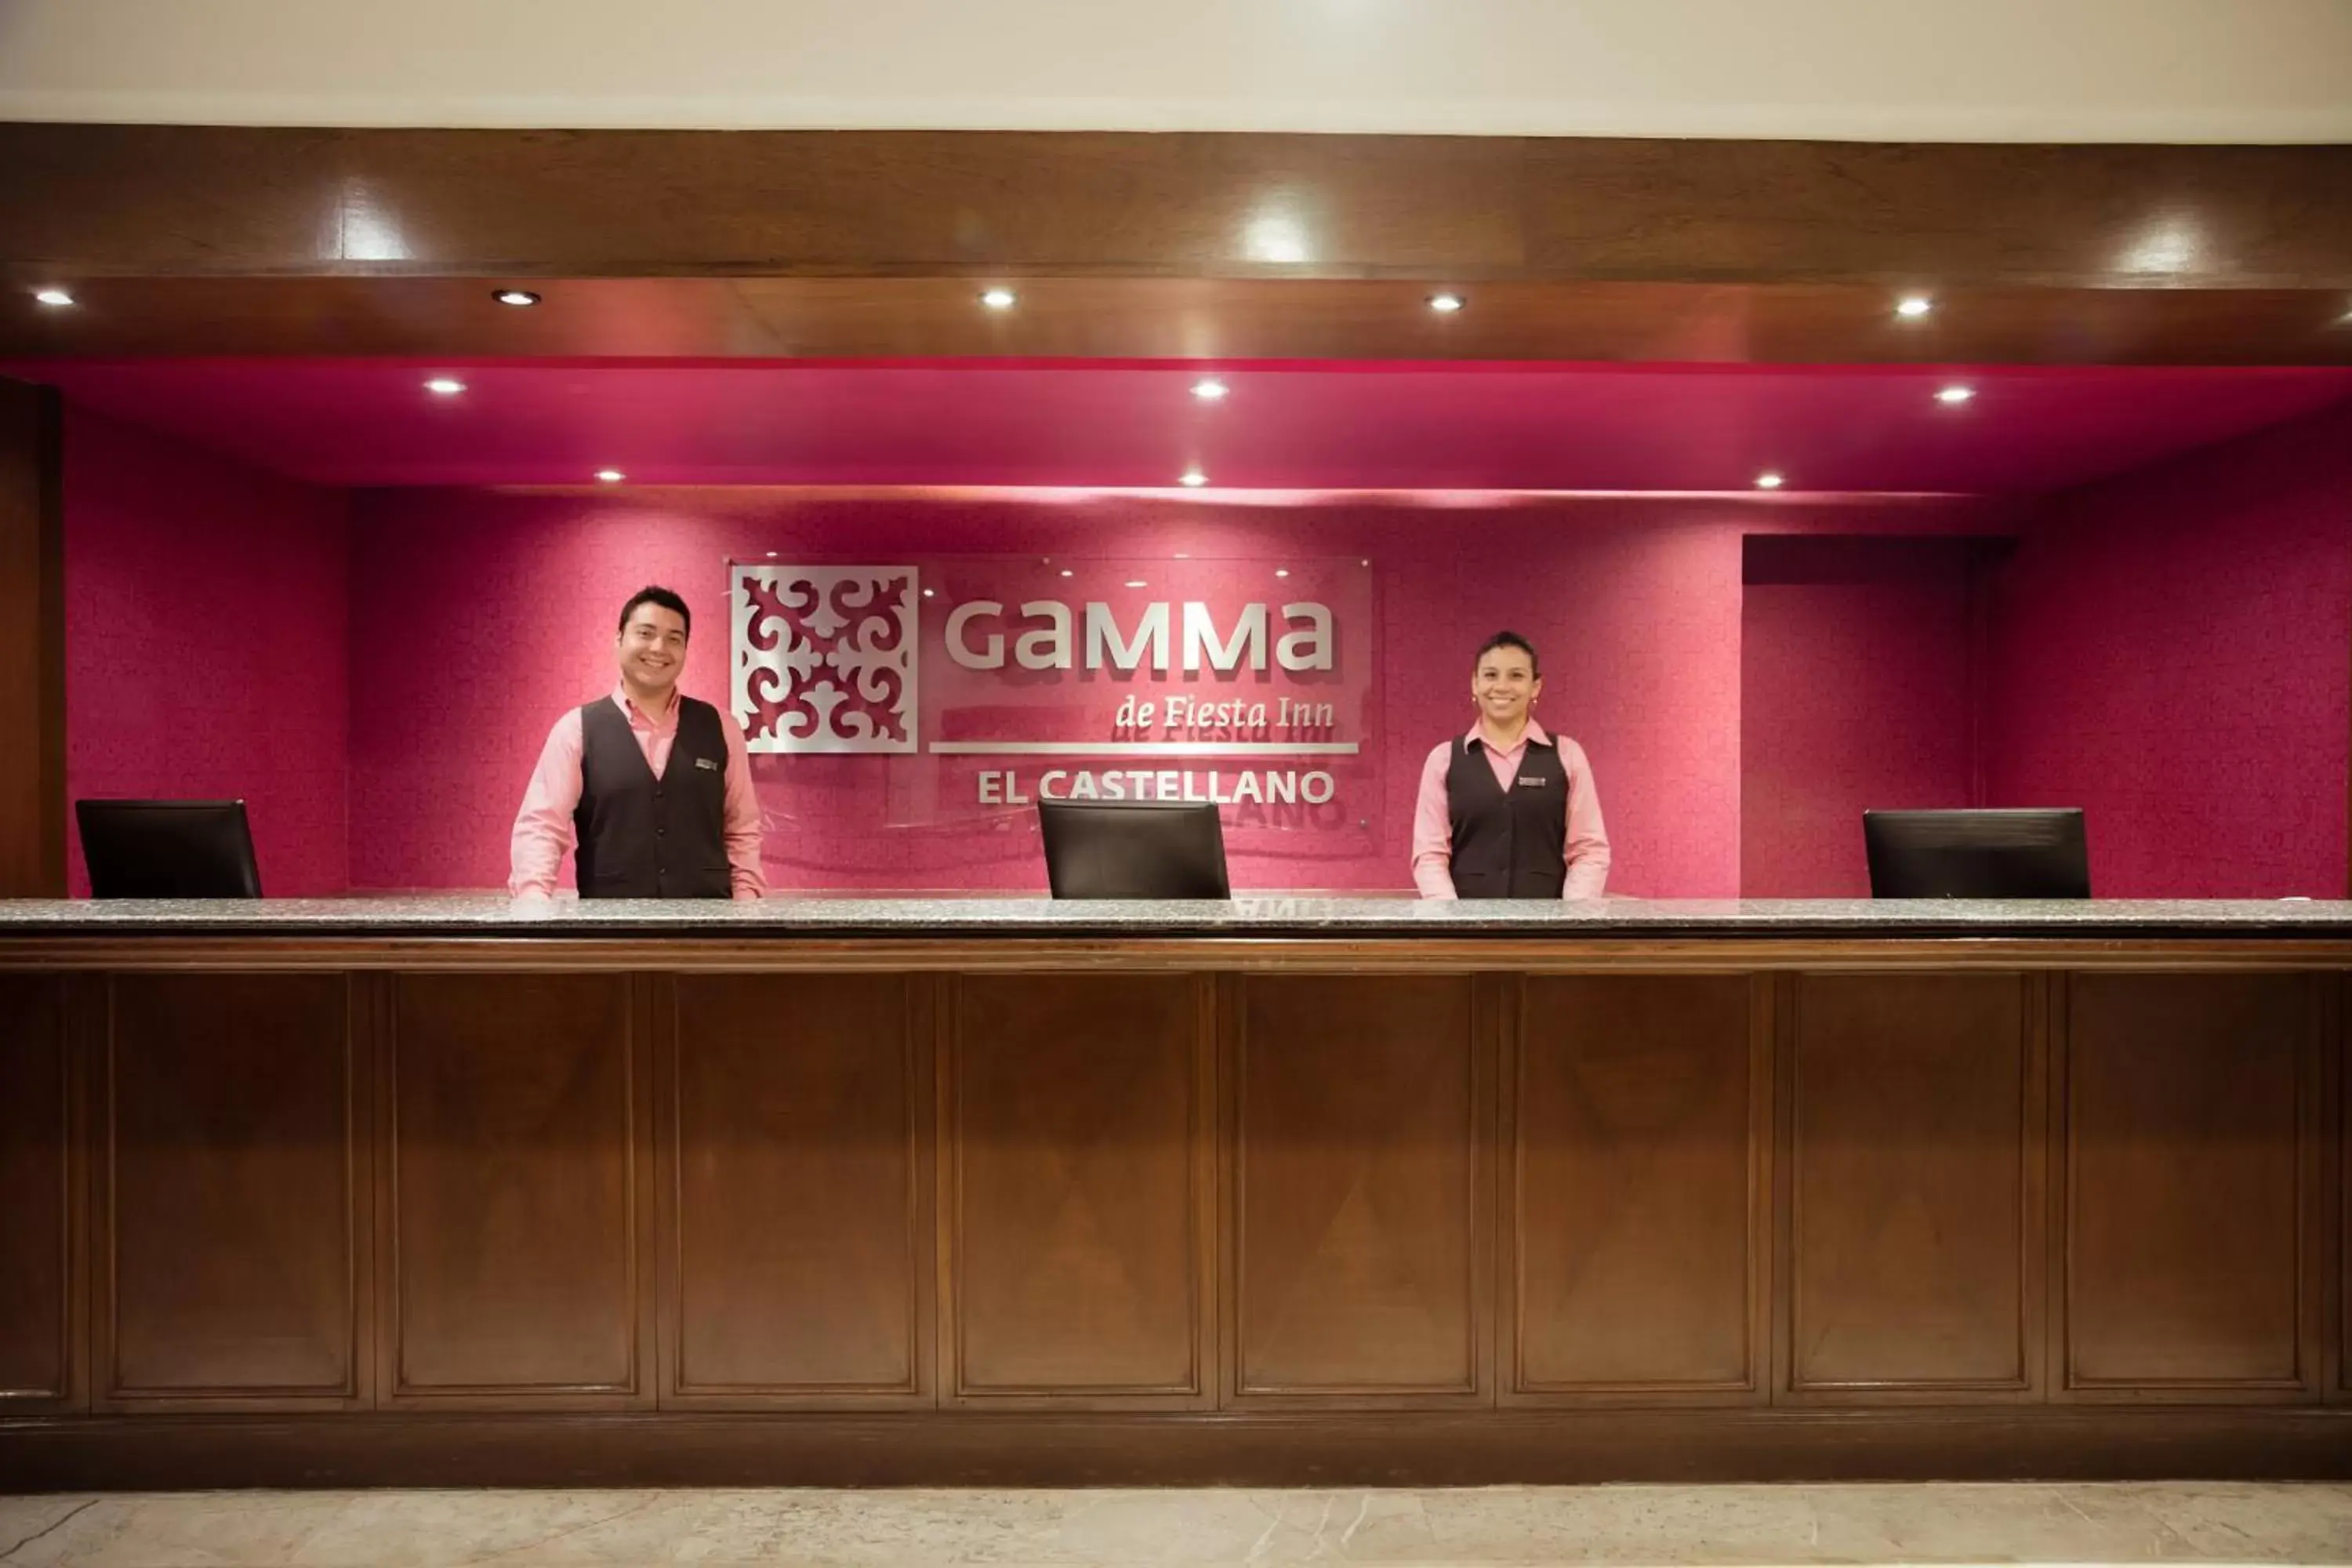 Lobby or reception in Gamma Merida El Castellano